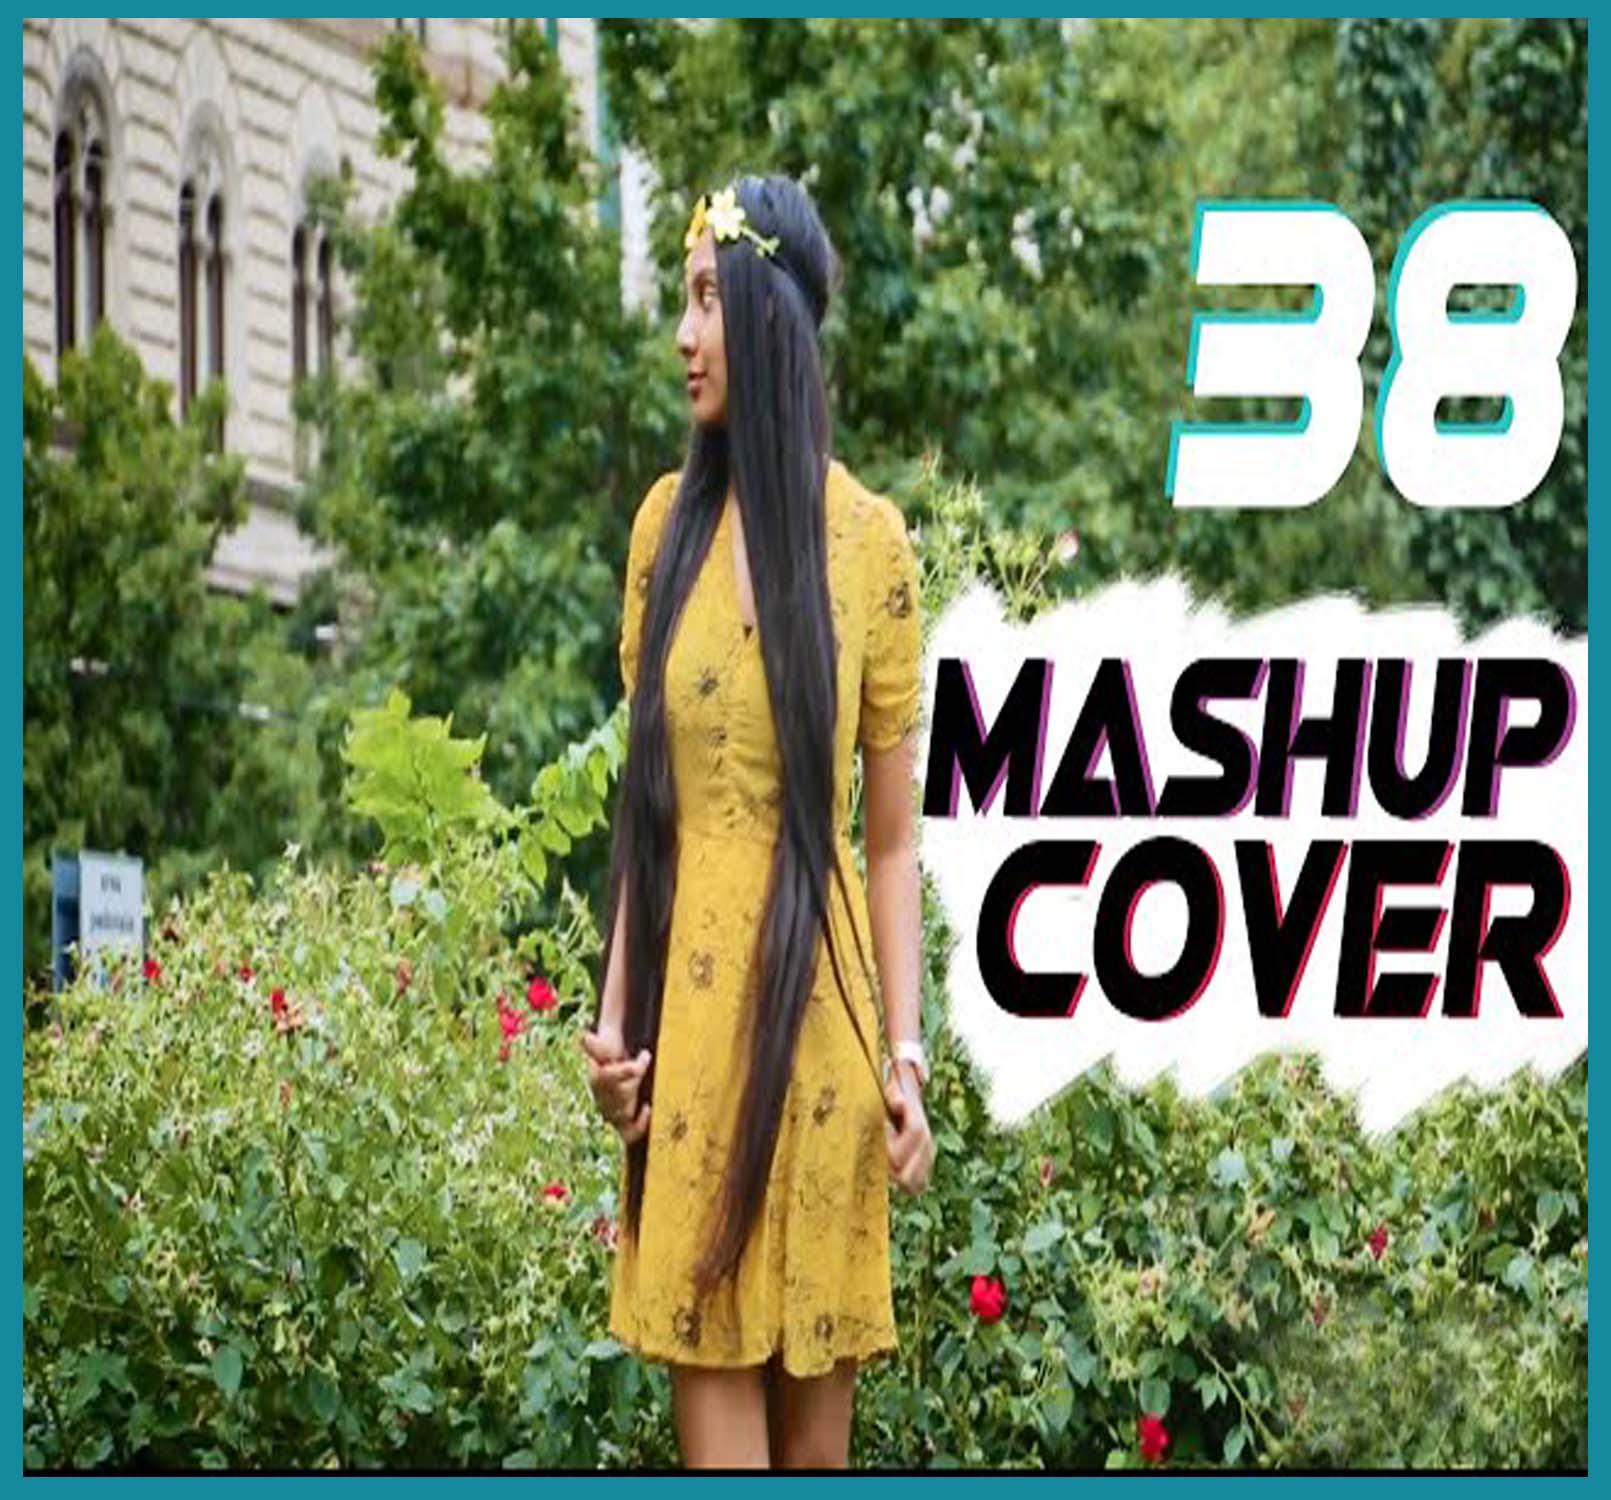 Mashup Cover 38